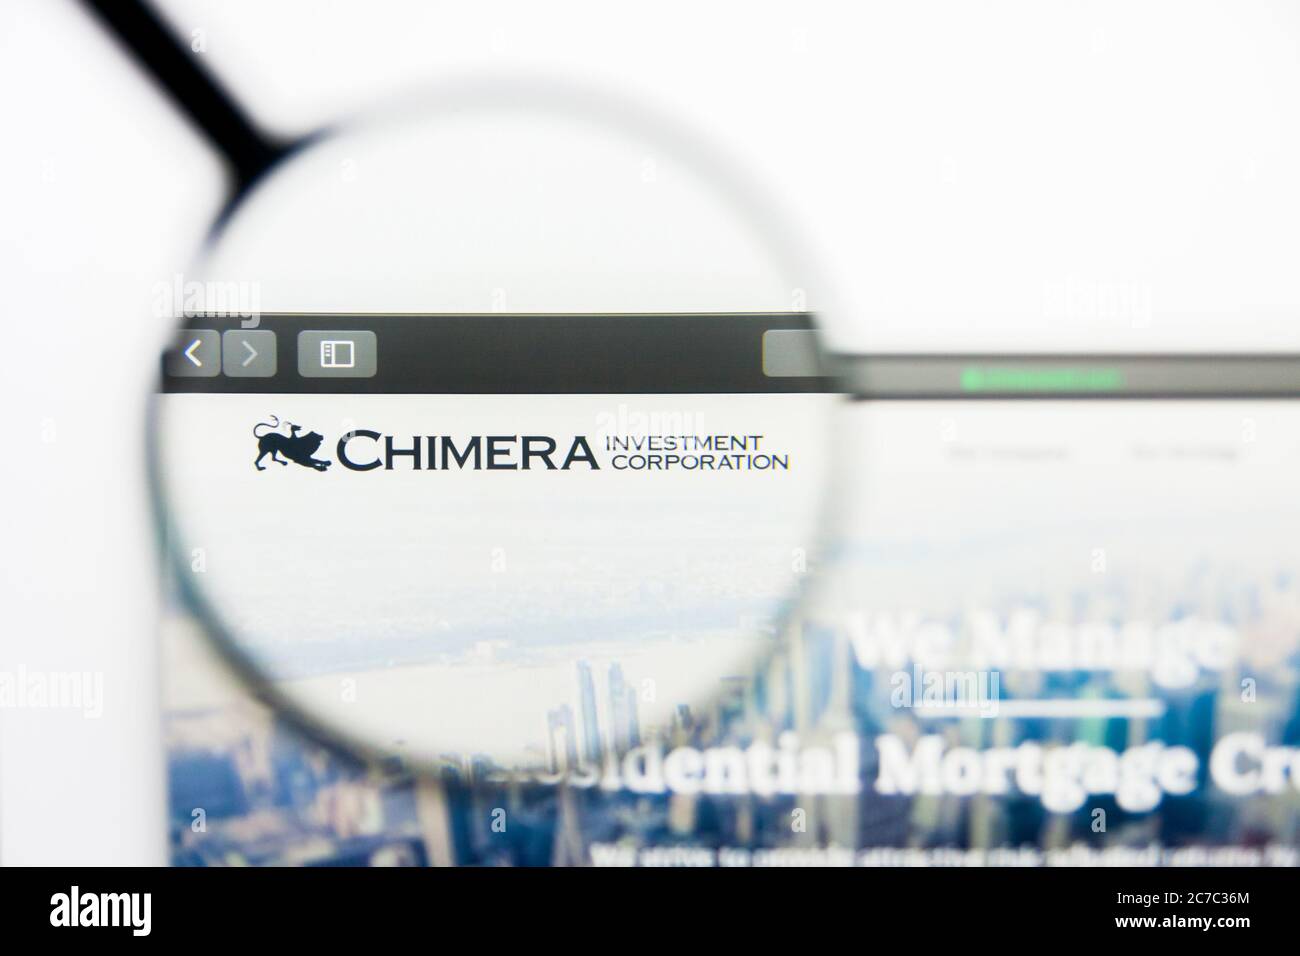 Los Angeles, Californie, Etats-Unis - 25 mars 2019 : éditorial illustratif de la page d'accueil du site Web Chimera Investment. Logo Chimera Investment visible sur Banque D'Images